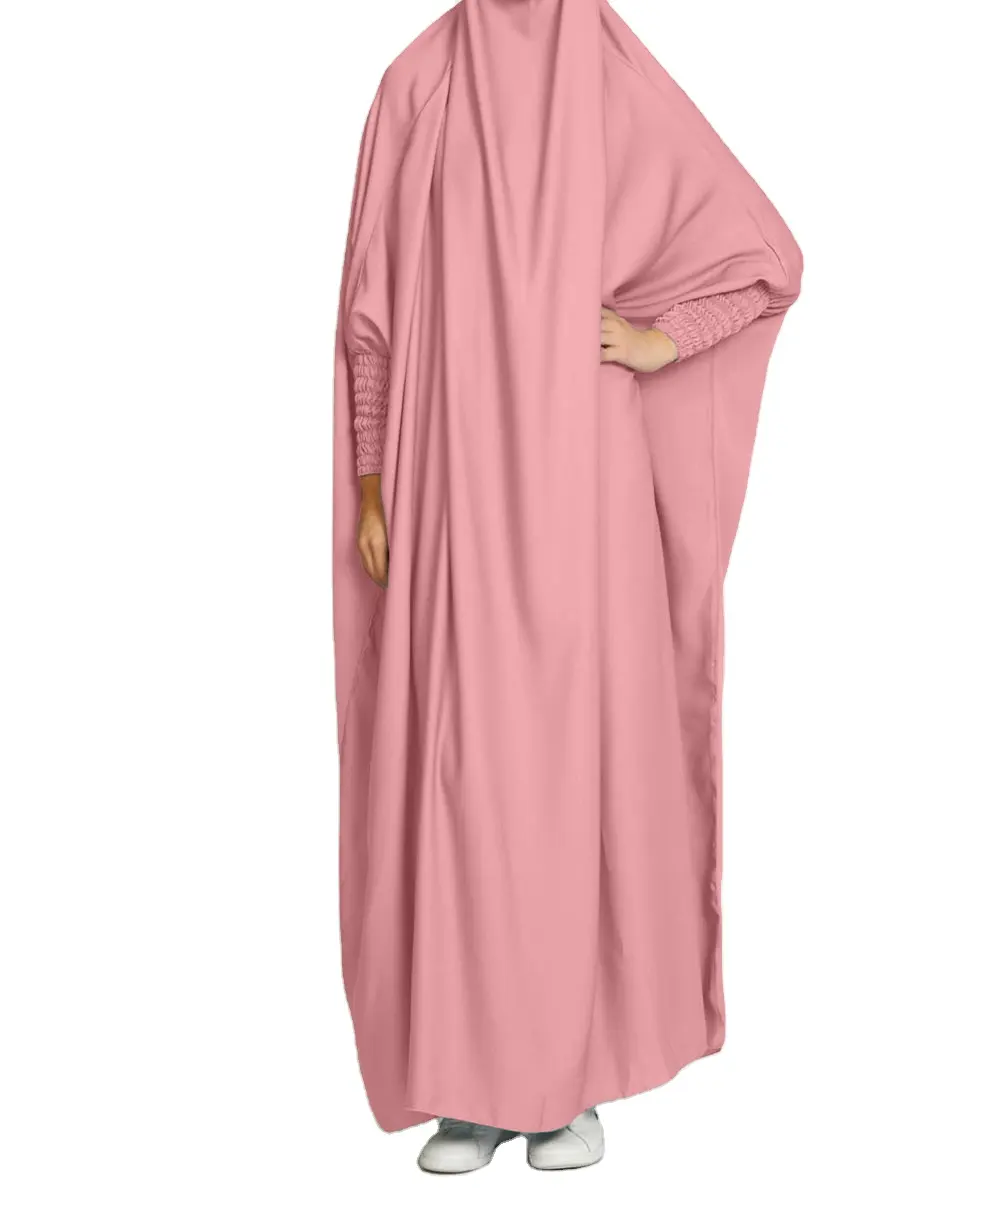 أزياء رائجة البيع الملابس الإسلامية قطعة واحدة الصلاة العباءة ثوب مع الحجاب للنساء المسلمين جلباب